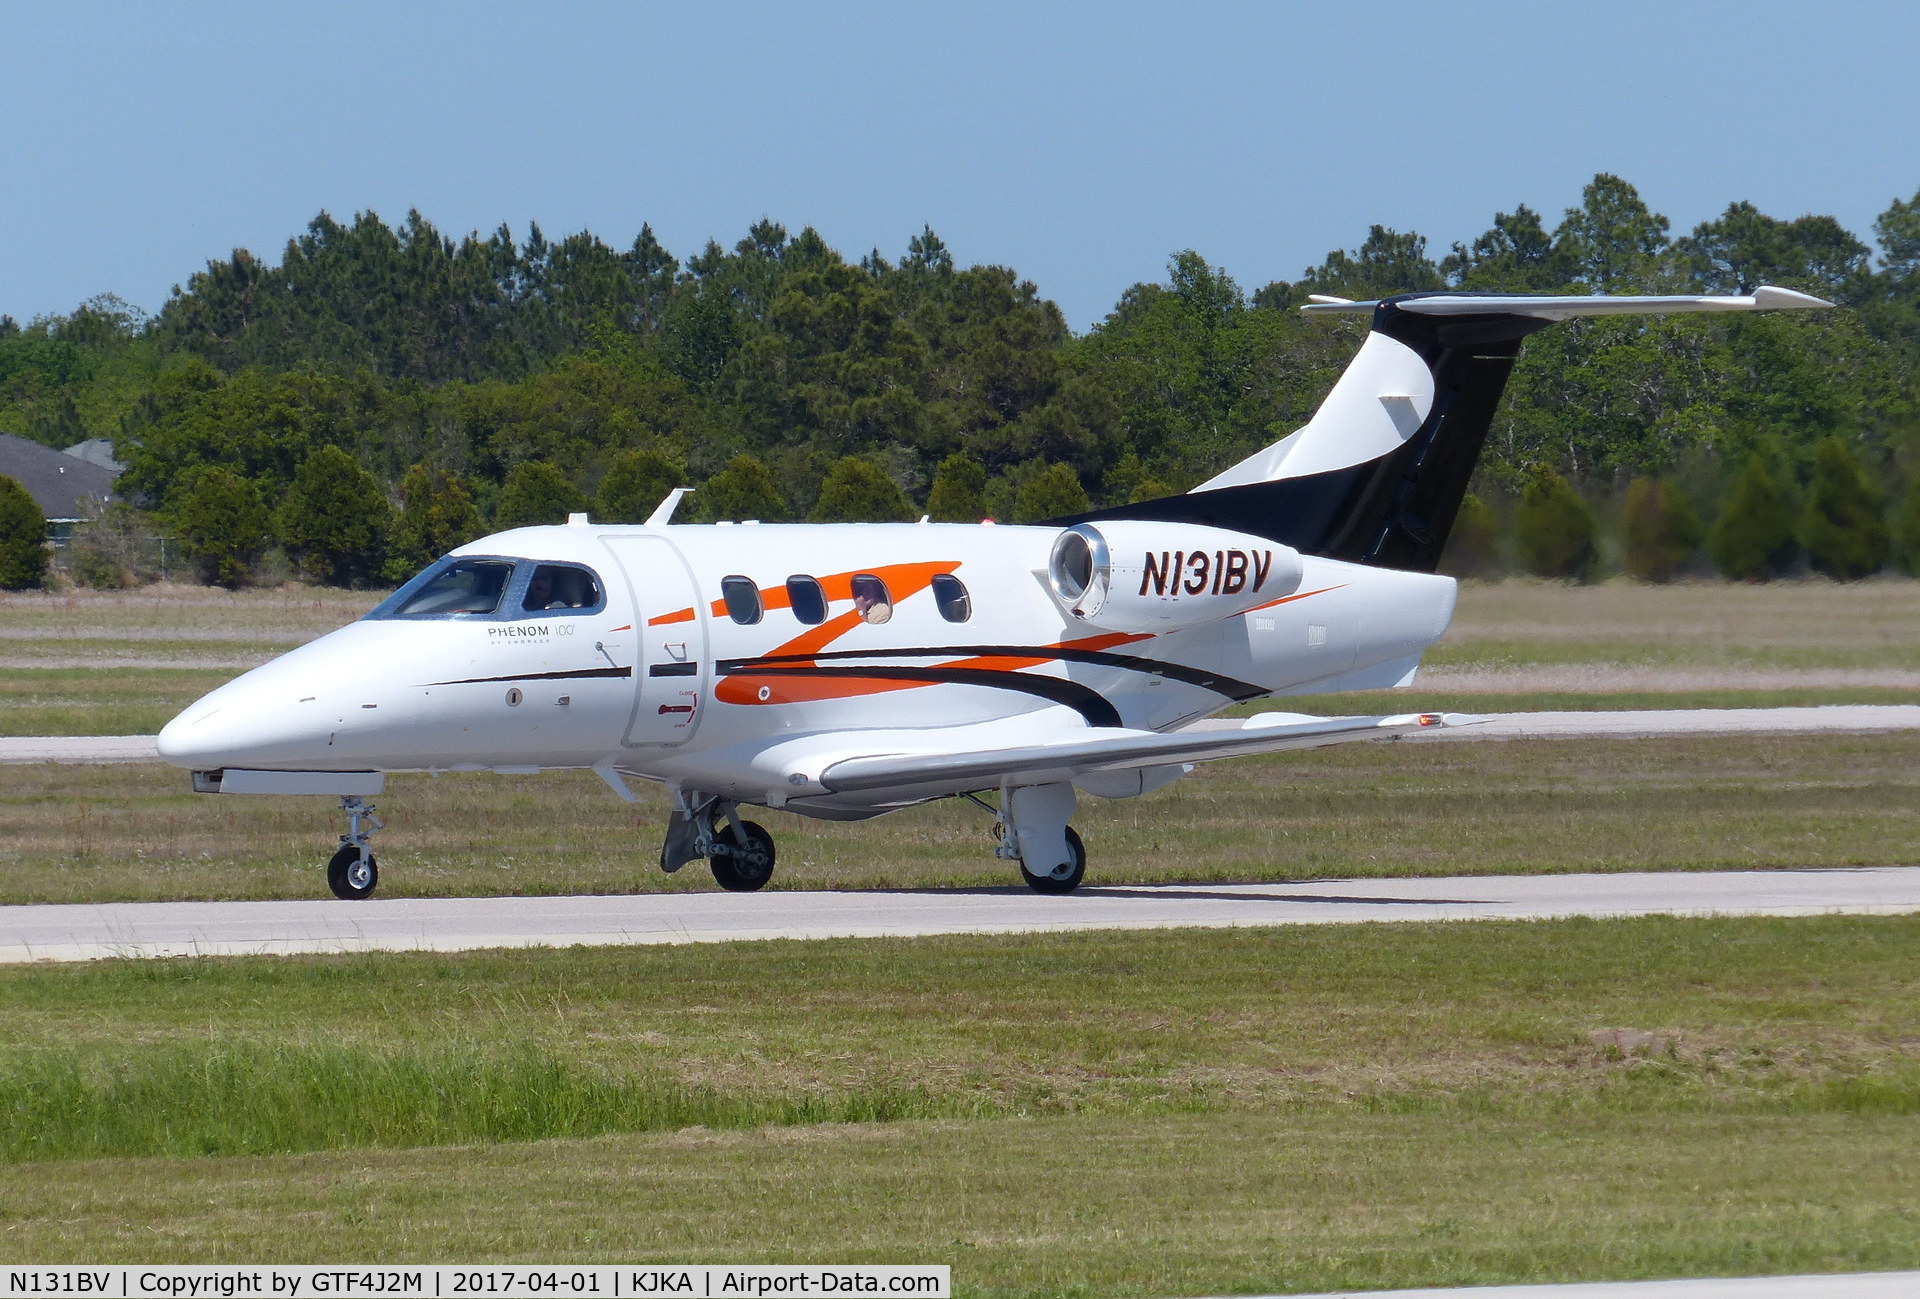 N131BV, 2011 Embraer EMB-500 Phenom 100 C/N 50000268, N131BV  at Jack Edwards, FL 1.4.17